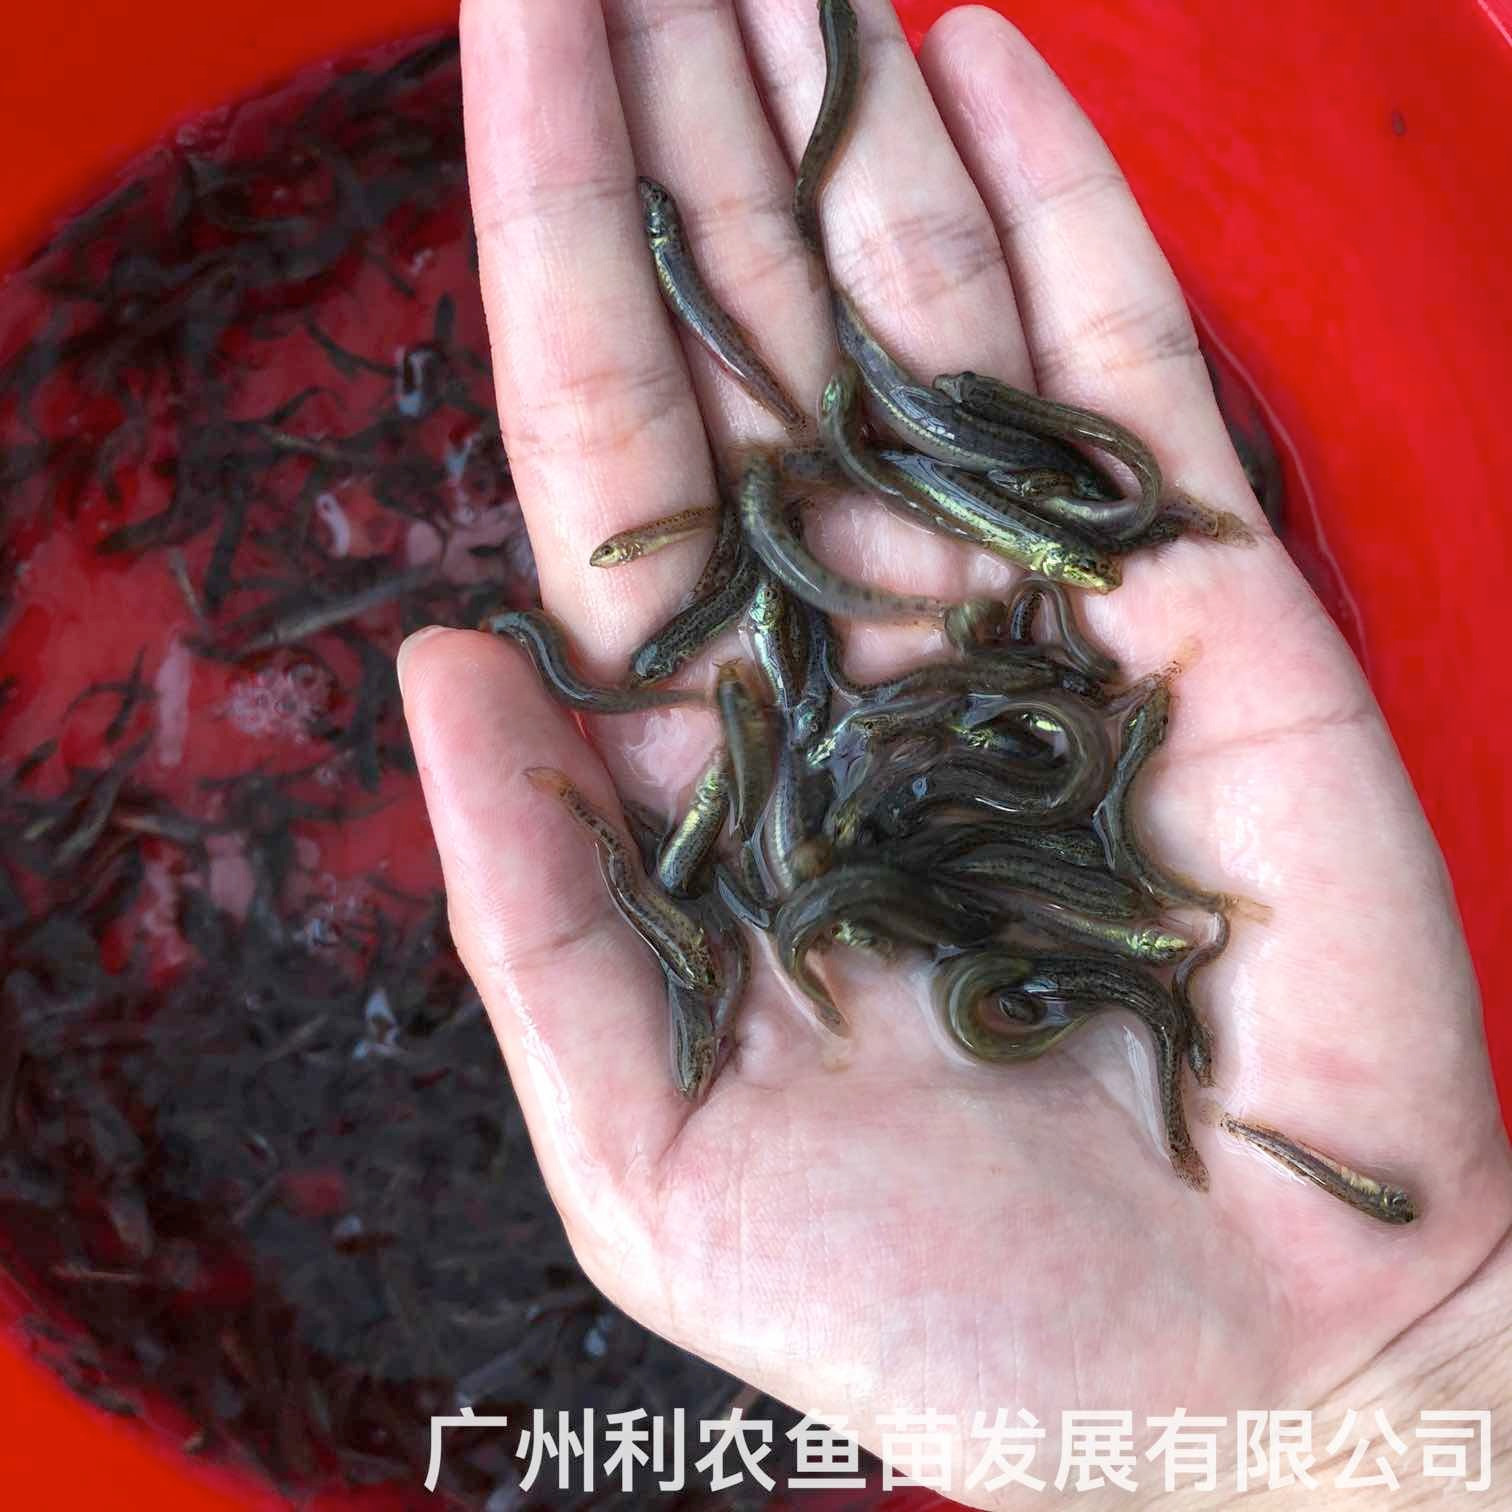 江西上饶台湾泥鳅苗出售出售江西新余泥鳅鱼苗批发养殖基地